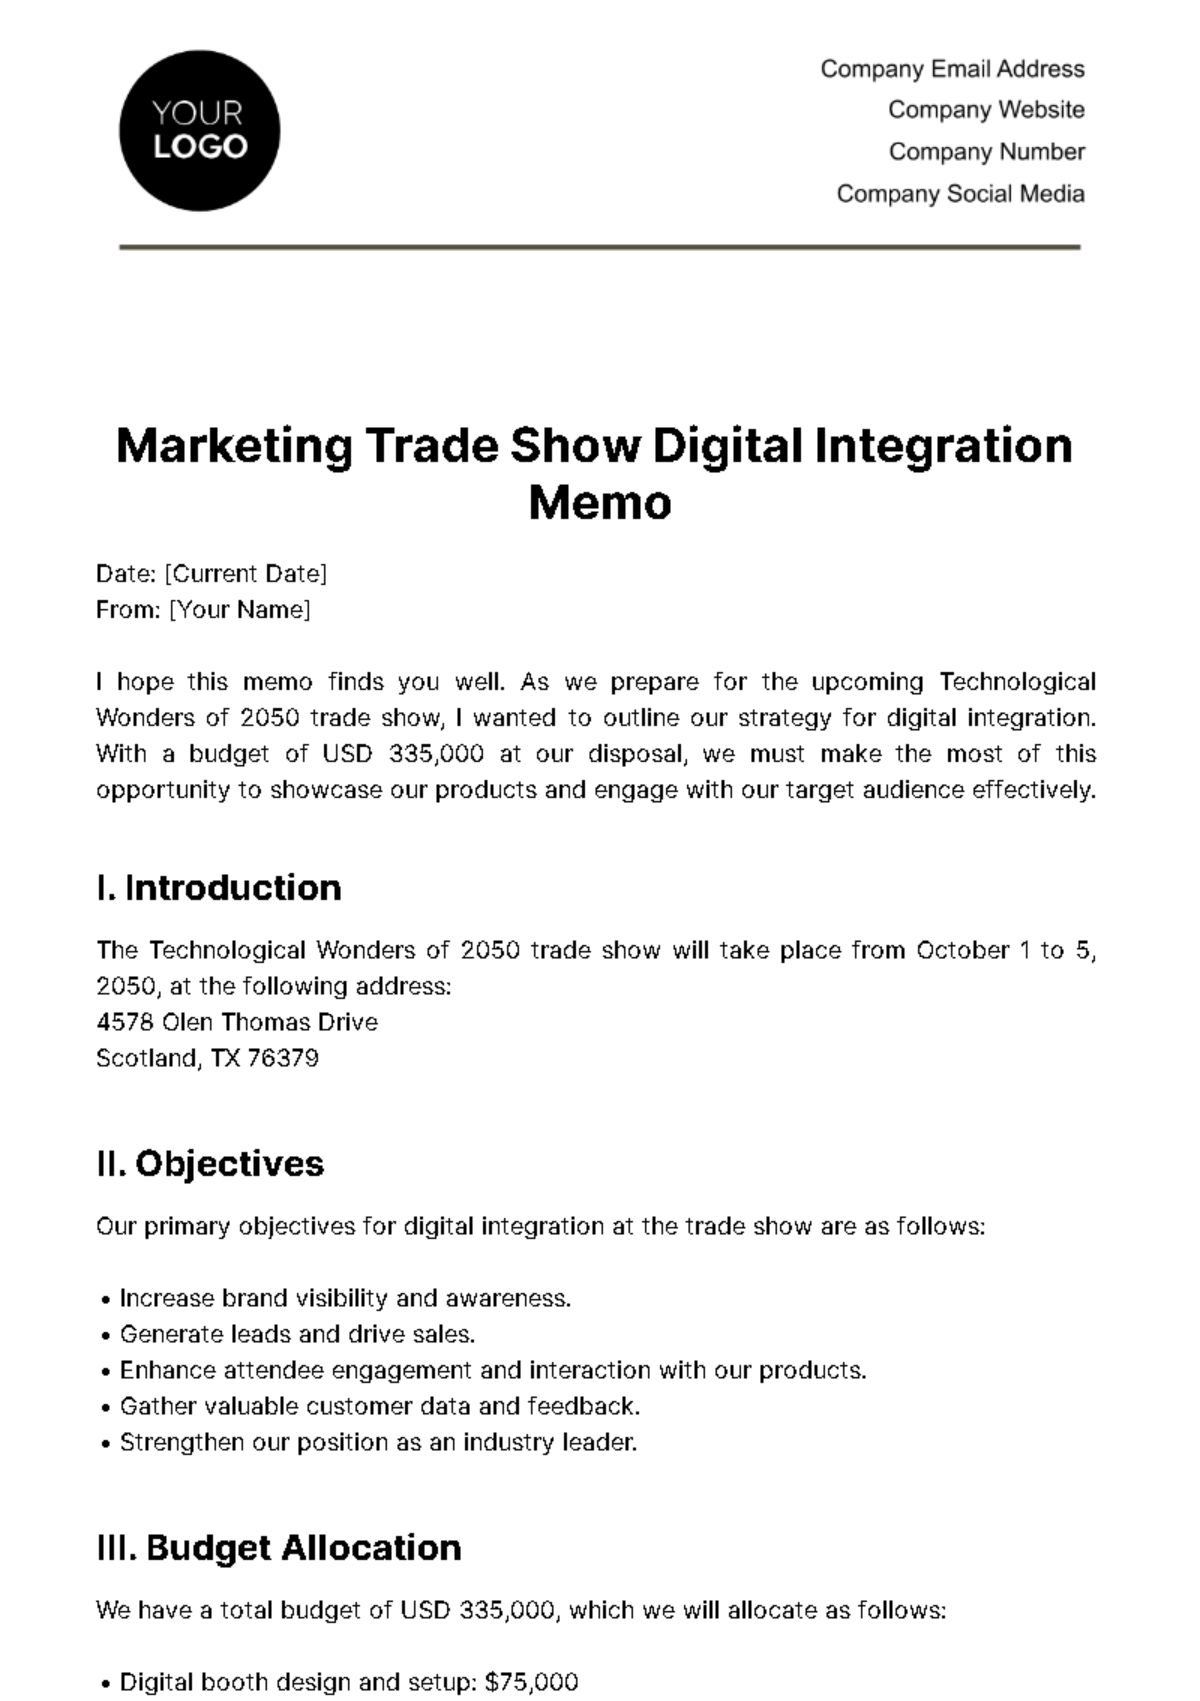 Free Marketing Trade Show Digital Integration Memo Template